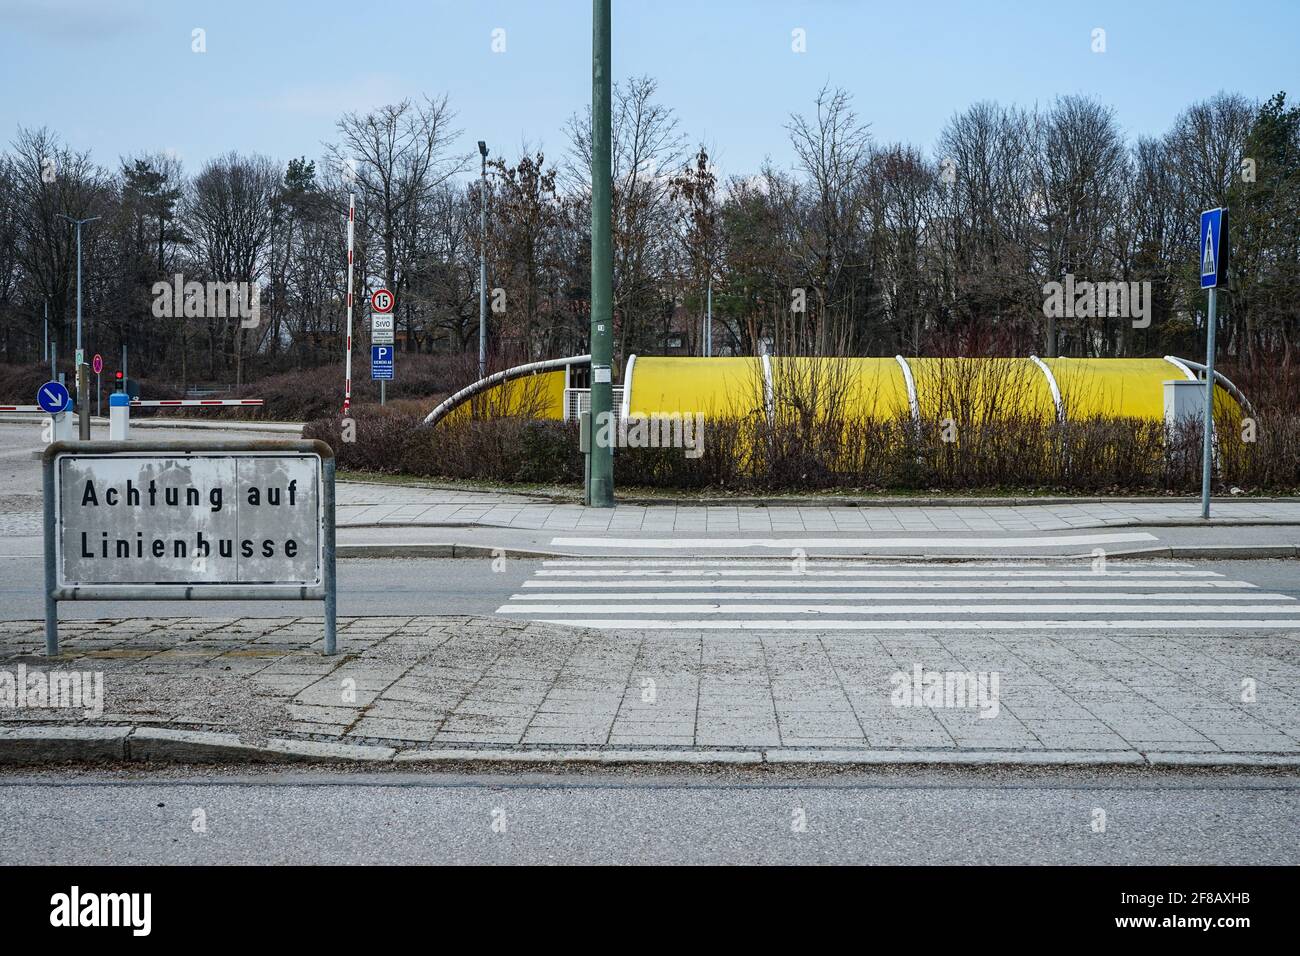 München, Neuperlach-Süd, Bayern, Deutschland, März 7, 2021: Siemens-Standort München Perlach (Legoland genannt). Blick vom Otto-Hahn-Ring. Fahrradständer. Stockfoto